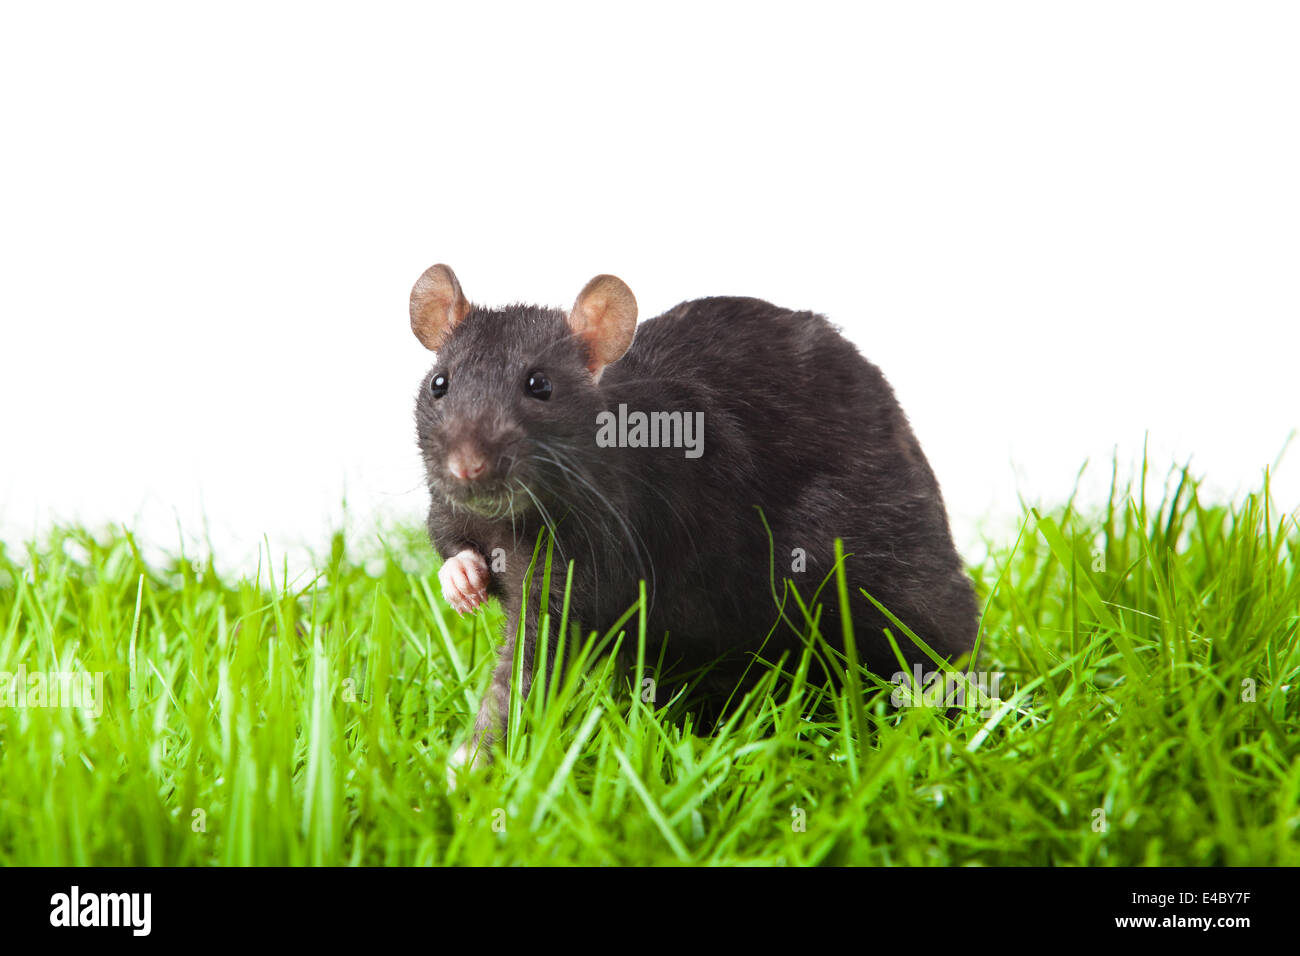 rat isolated Stock Photo